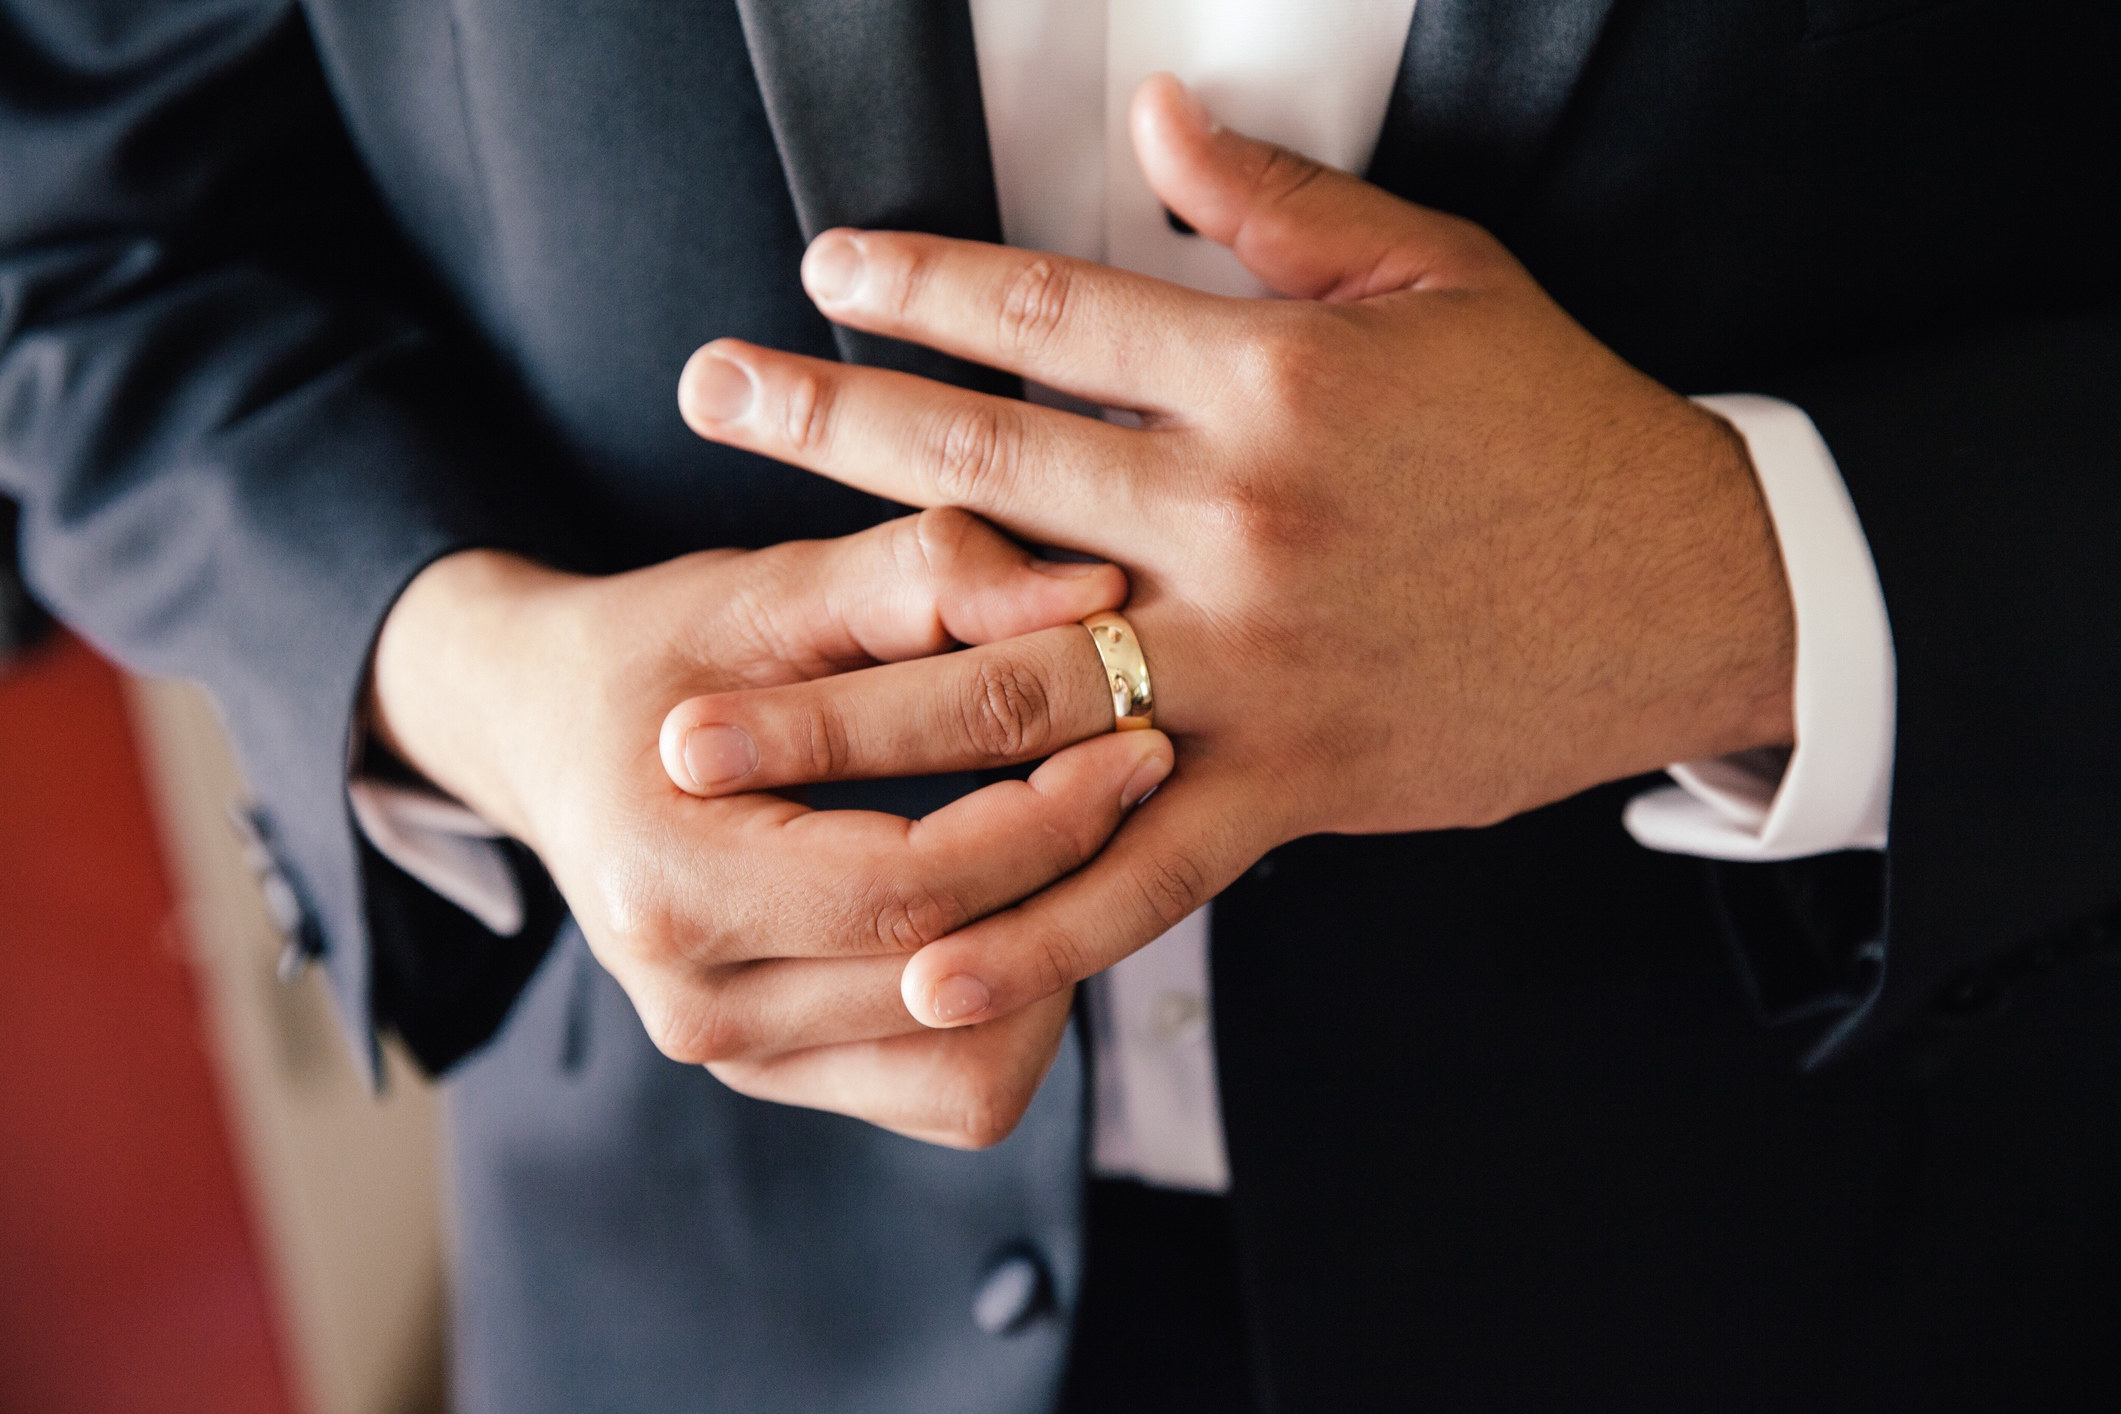 A groom adjusts his wedding ring